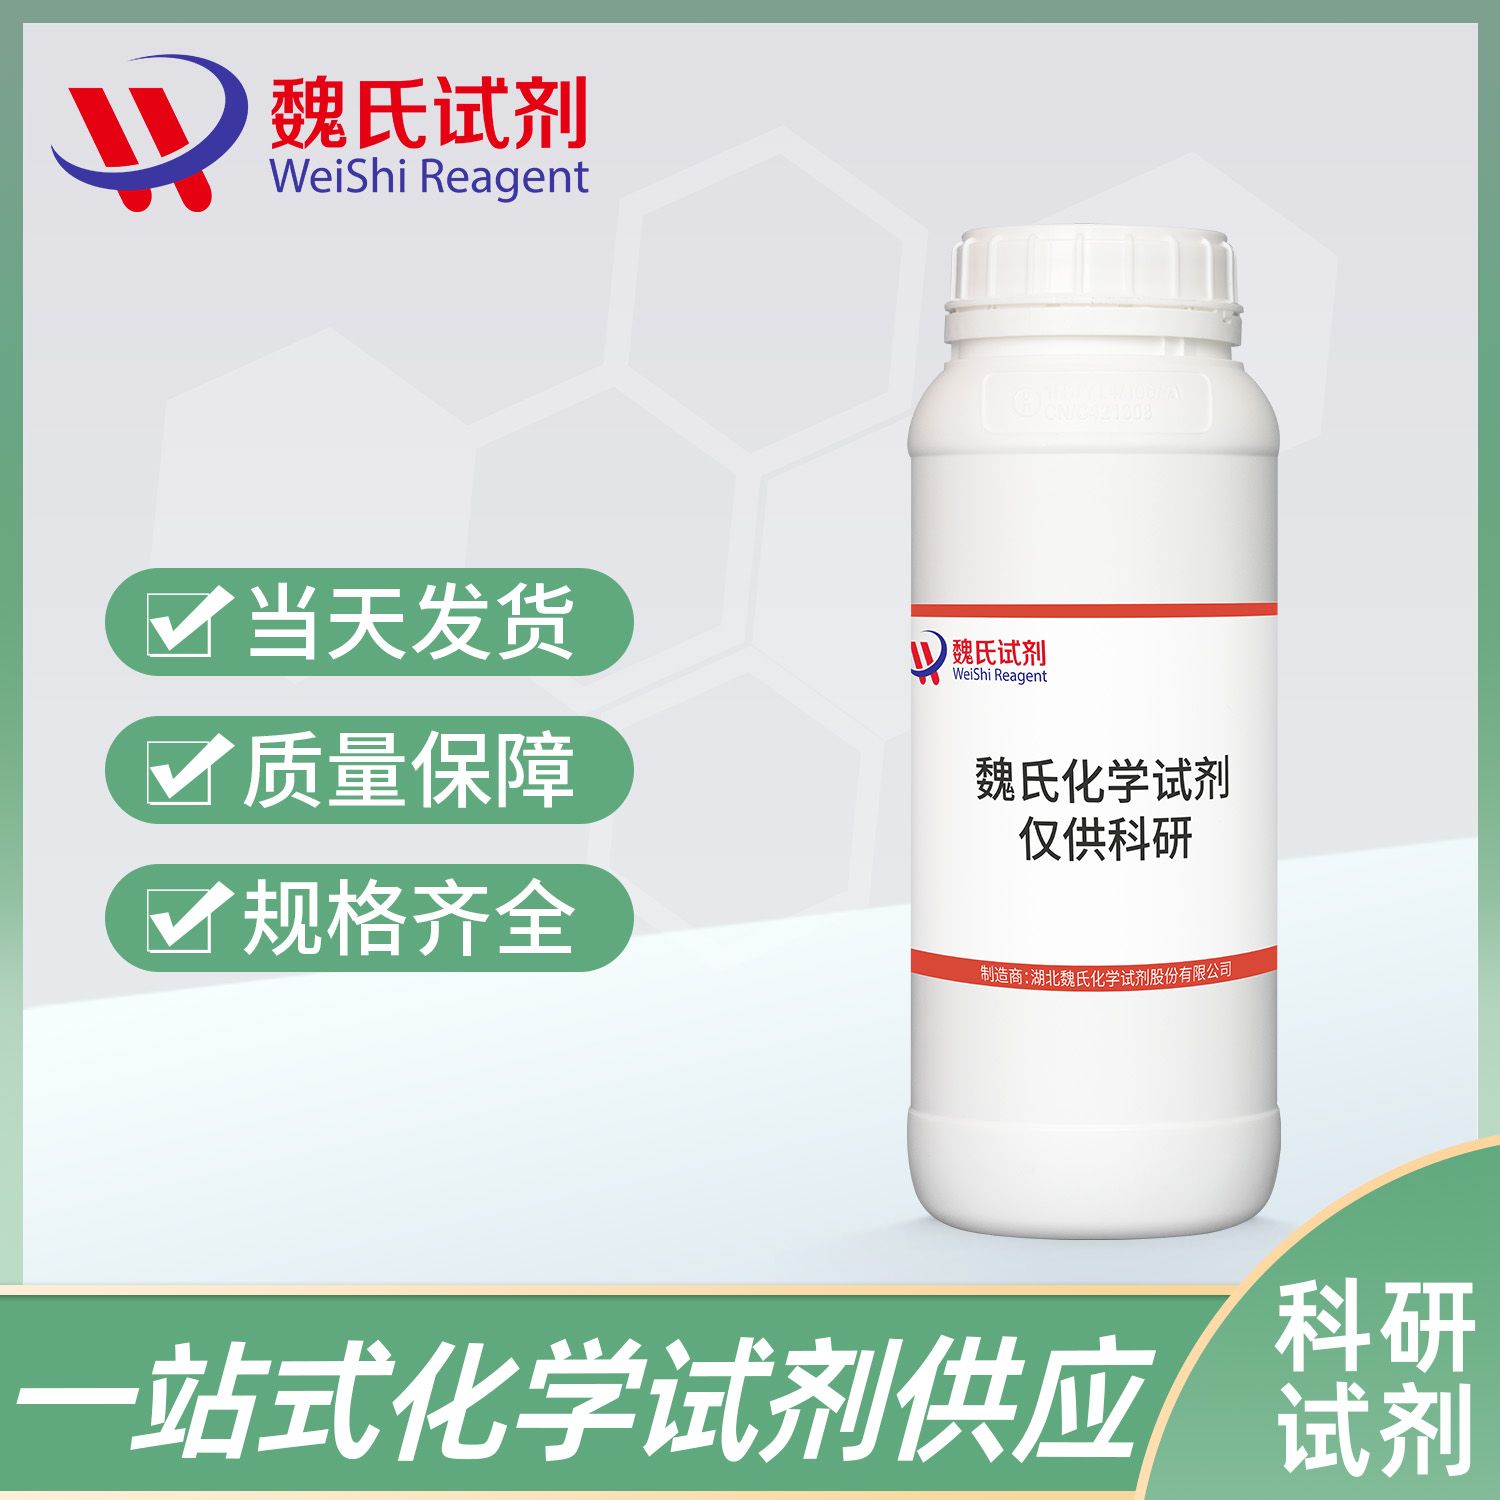 5579-84-0 /盐酸倍他司汀/Betahistine Hydrochloride